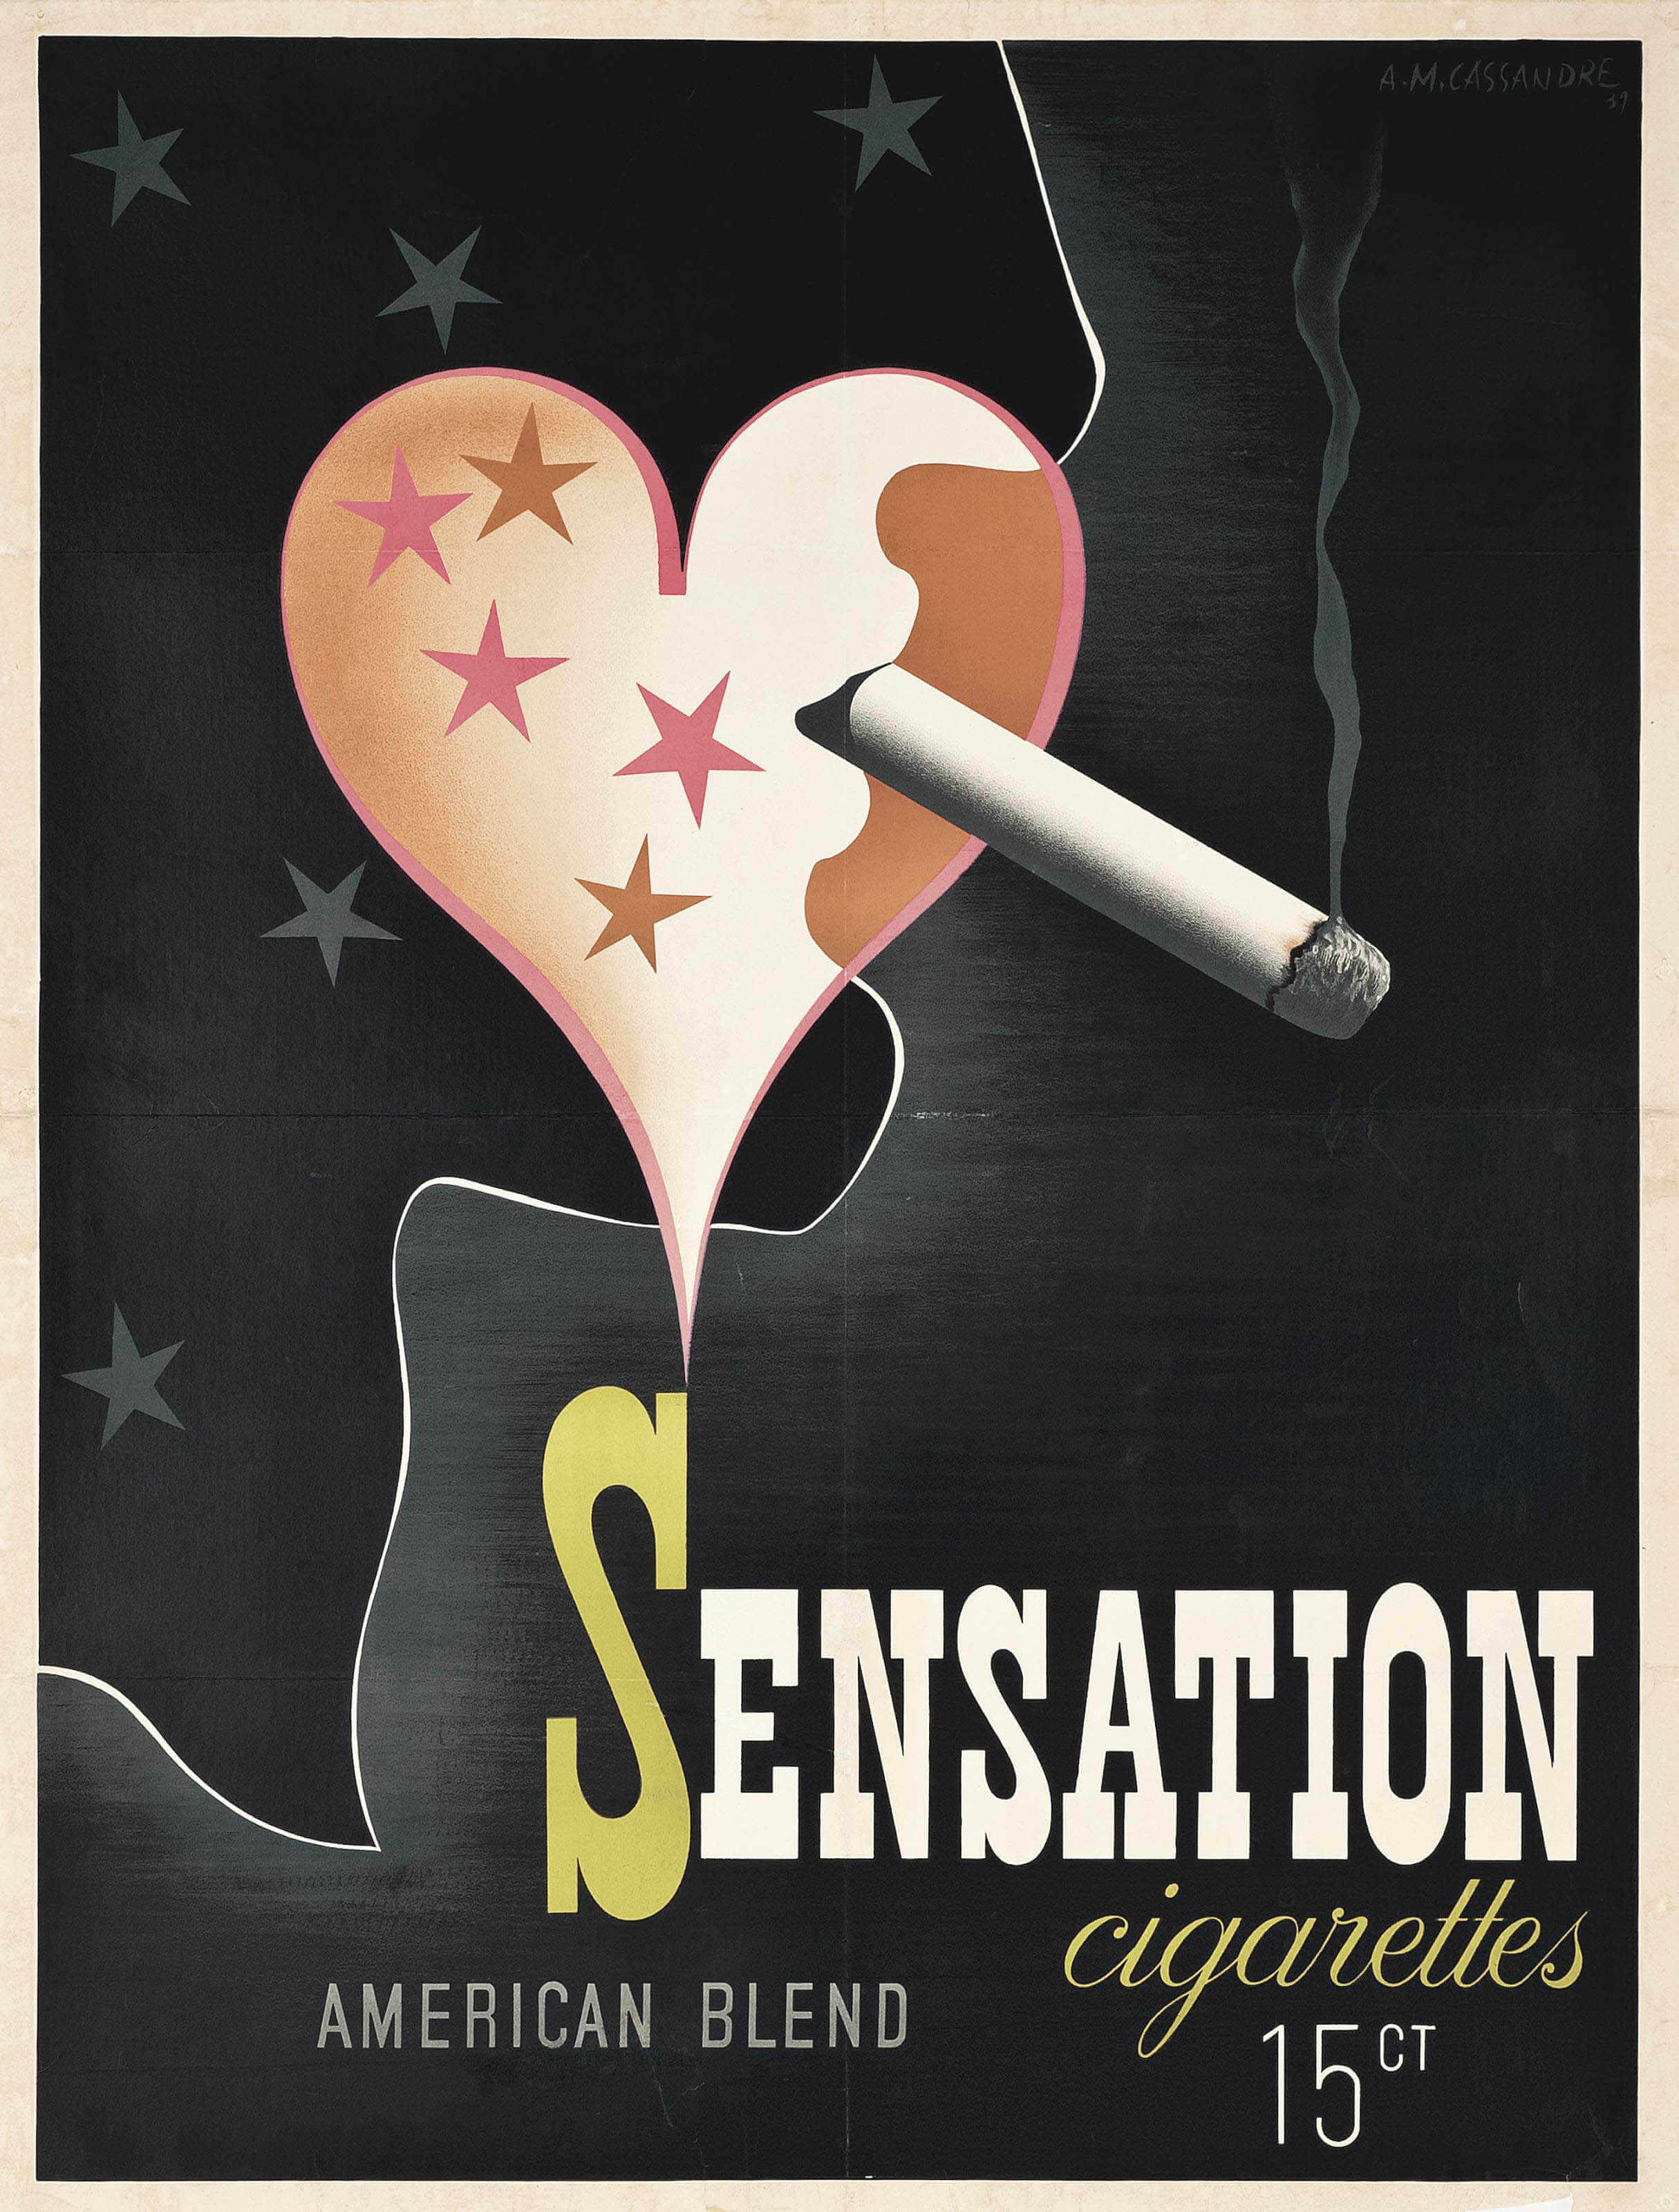 Diseño para la marca de tabaco Sensation, de AM cassandre